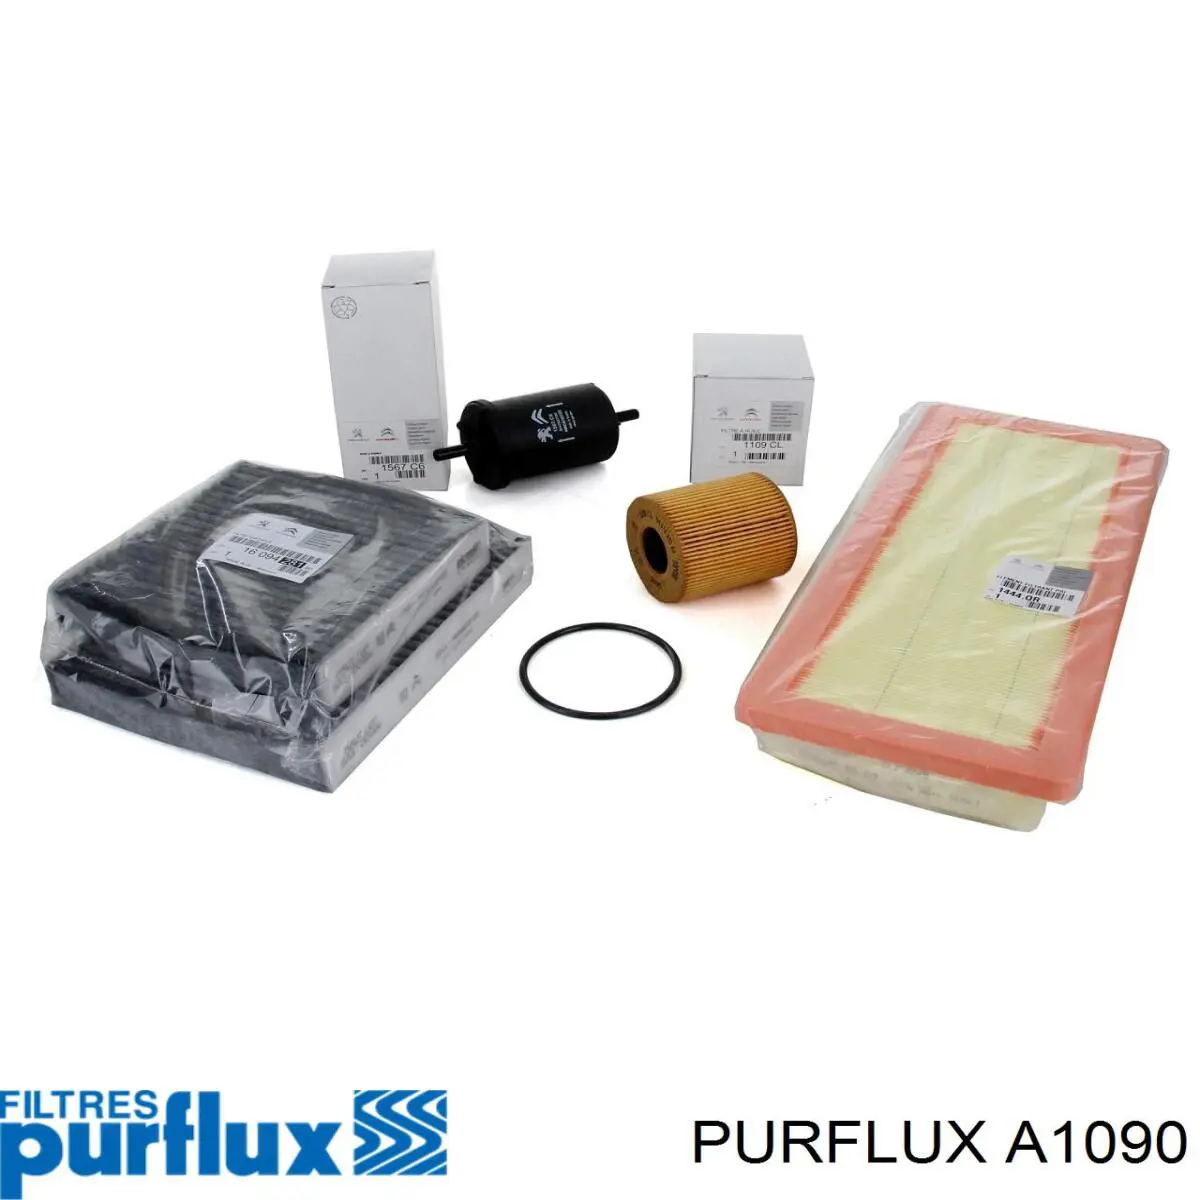 A1090 Purflux filtro de aire